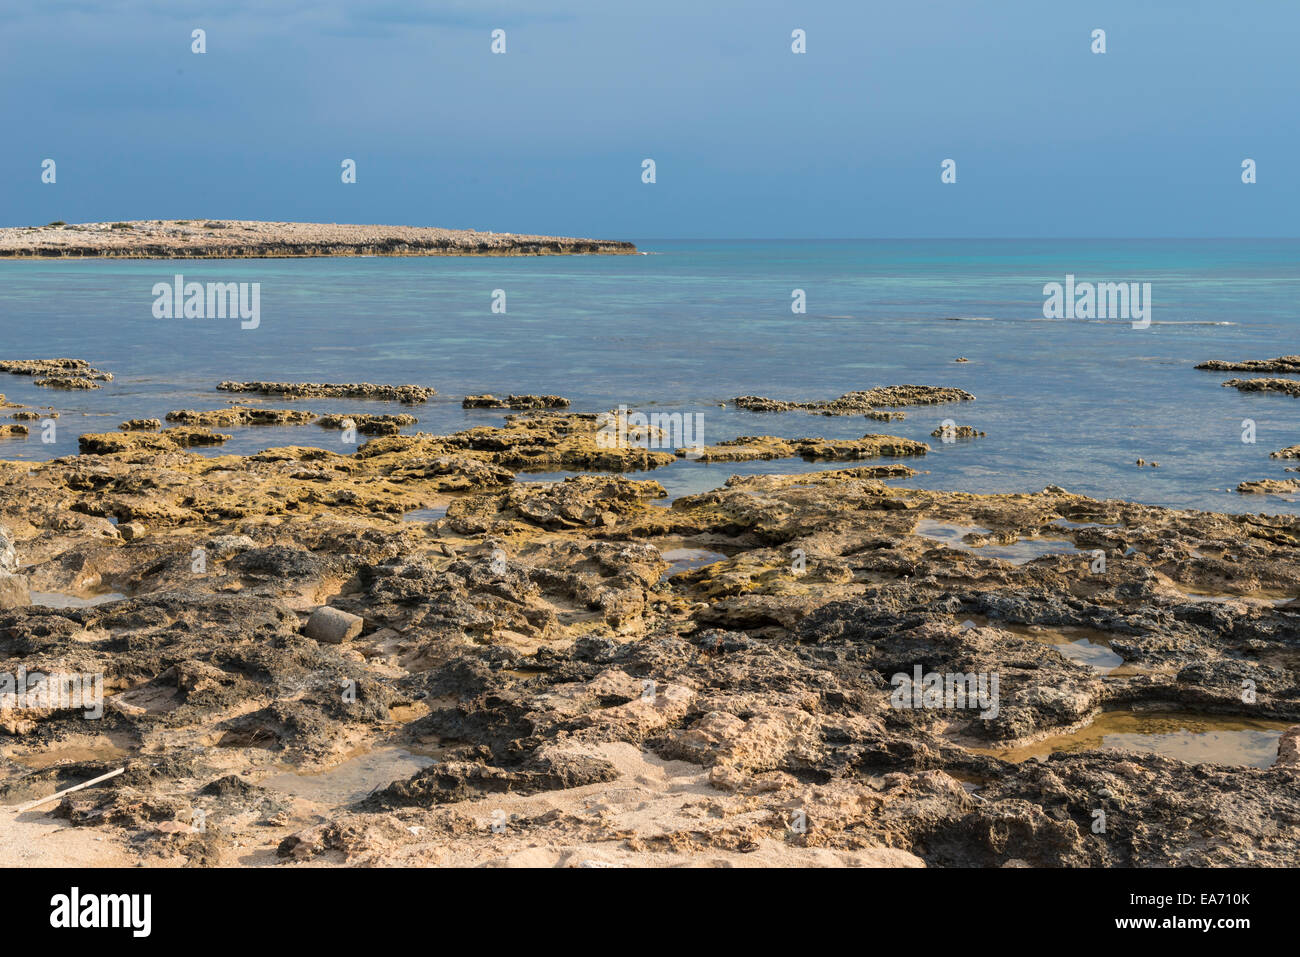 A sud la costa orientale di Cipro nella spiaggia di Nissi e Ayia Nappa in zona. Foto Stock